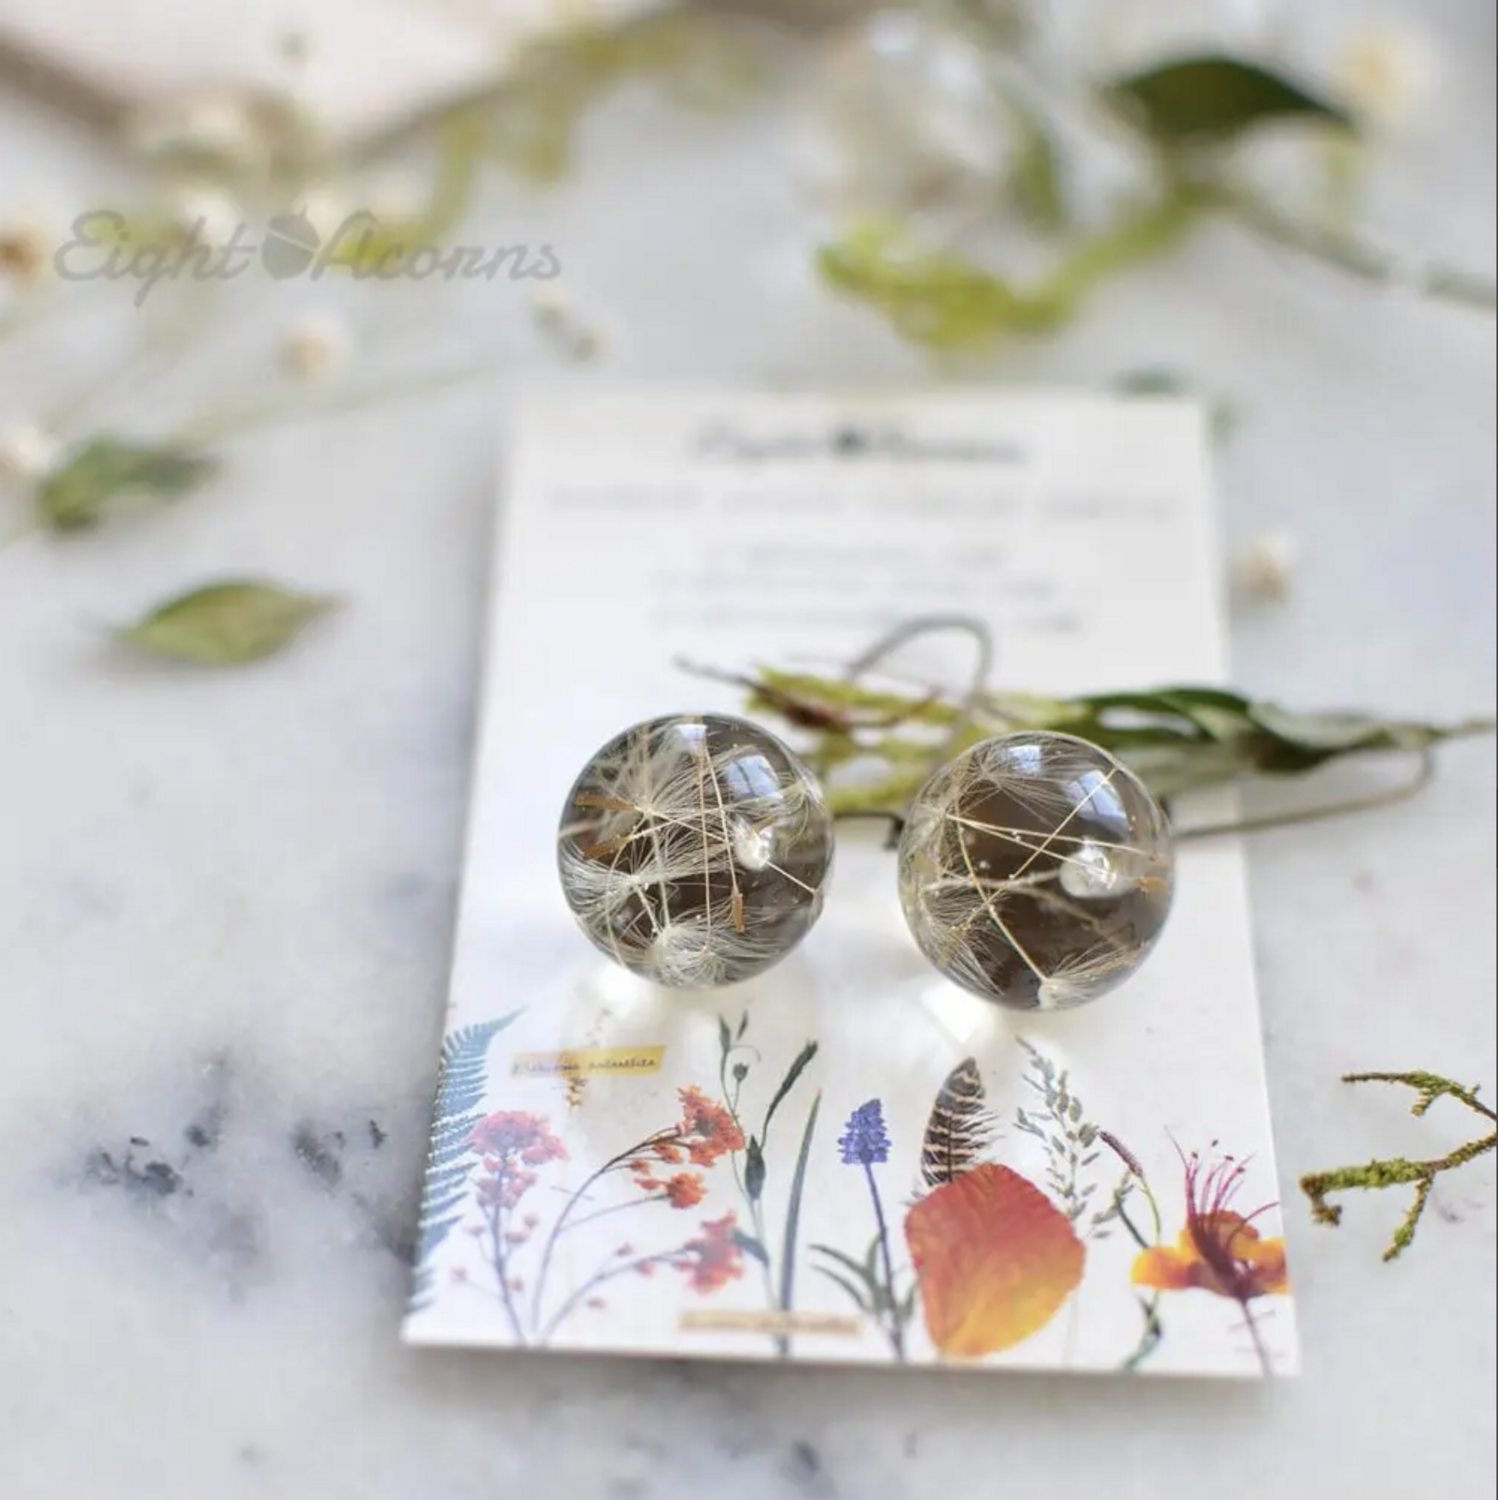 Eight Acorns Dandelion Seed Earrings